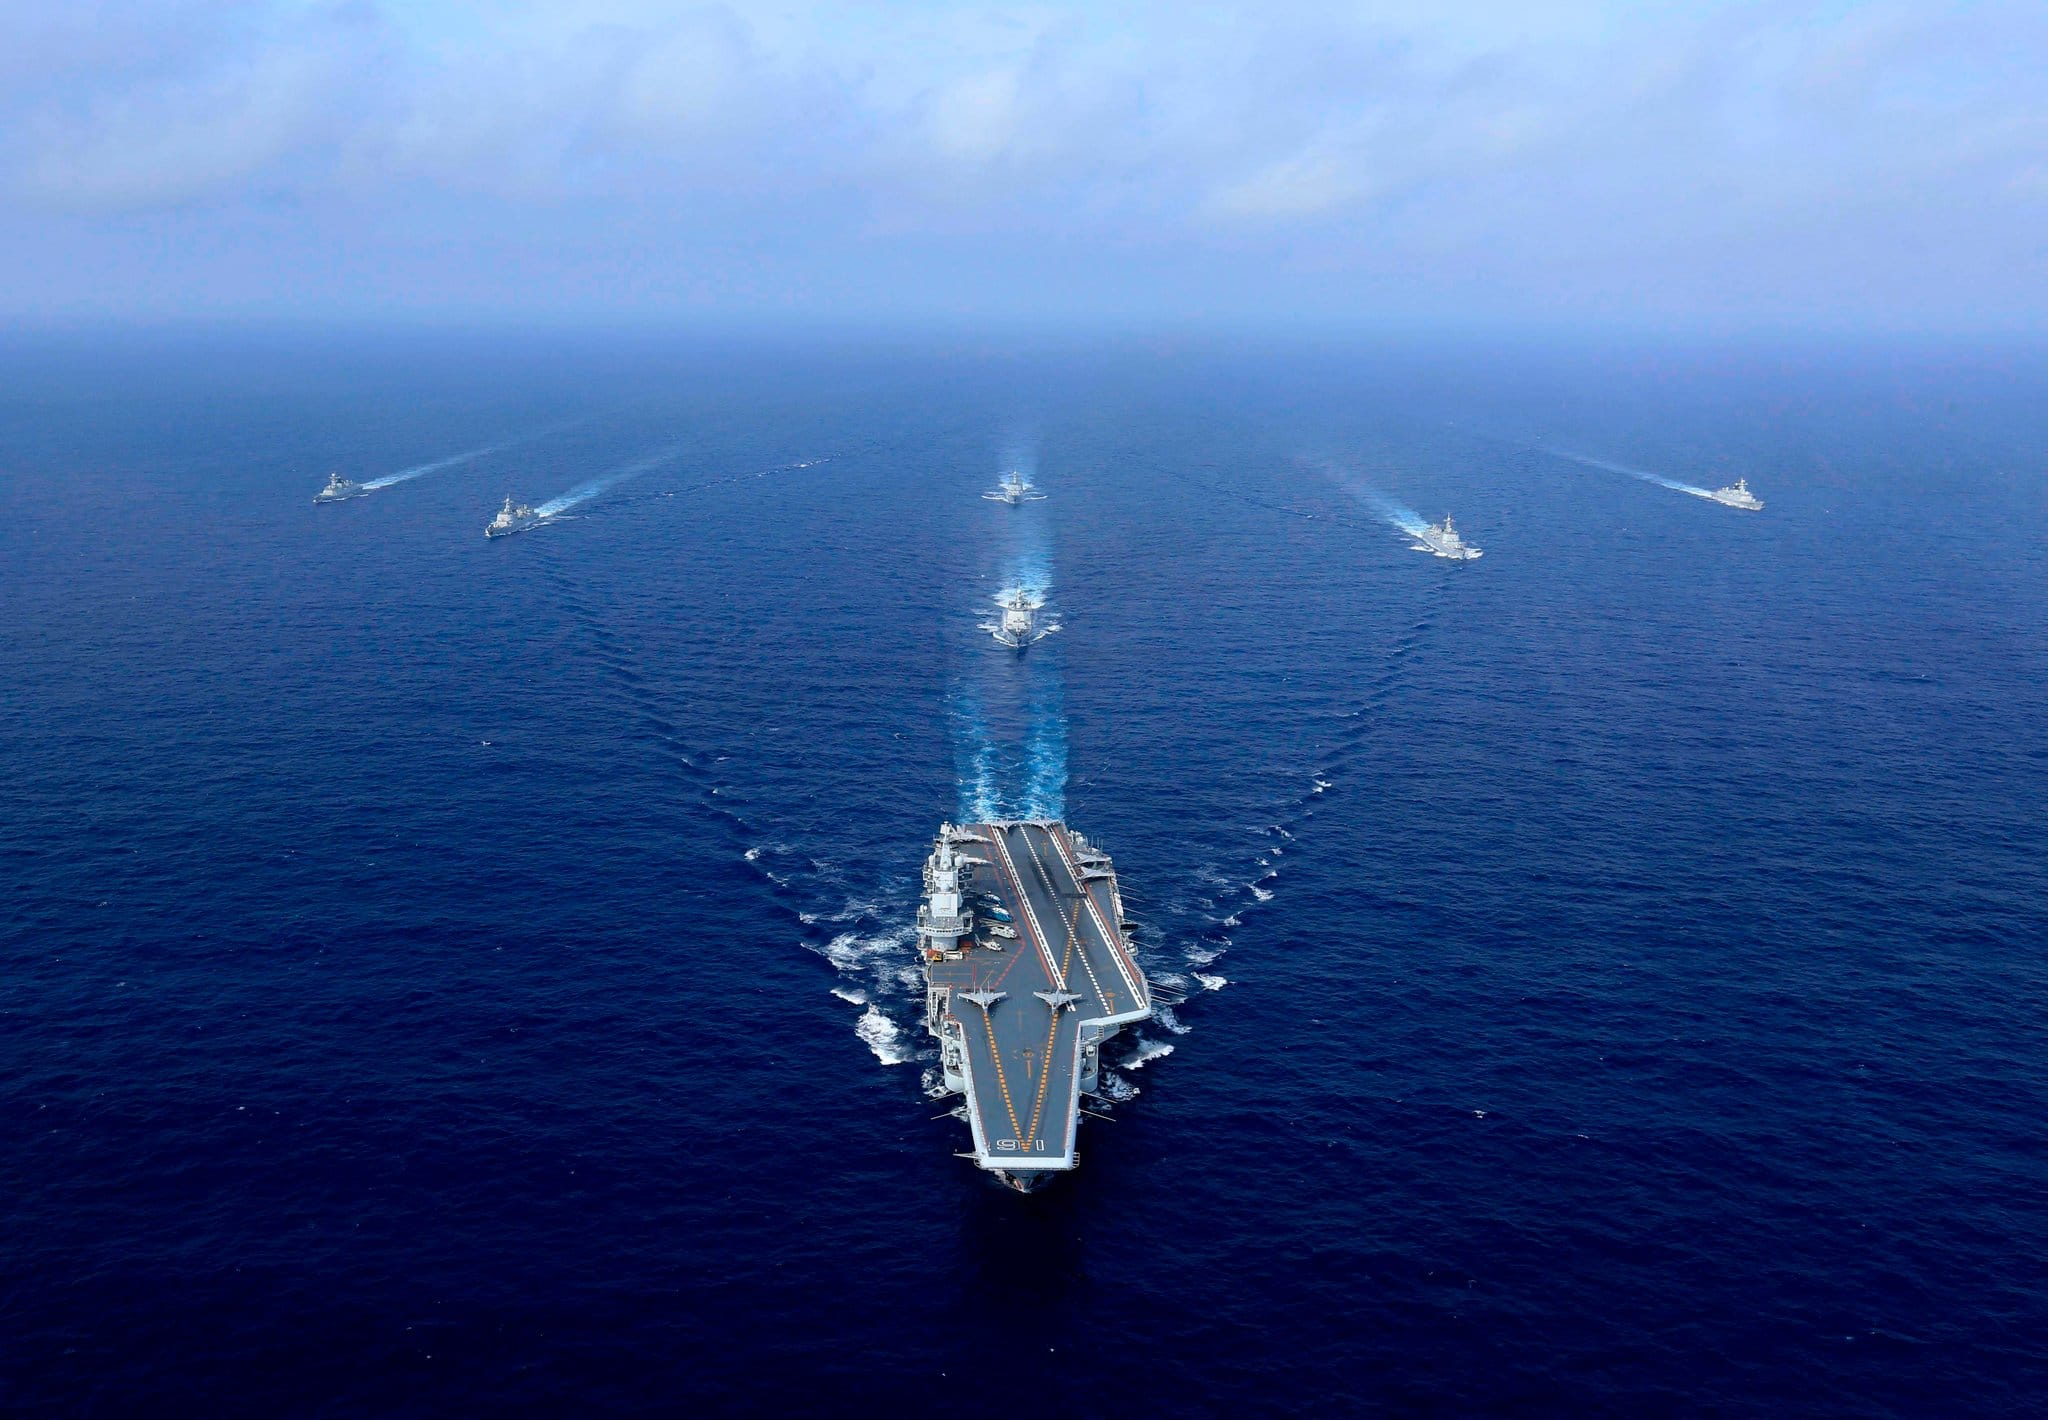 Seven US Navy ships sailing through the open ocean